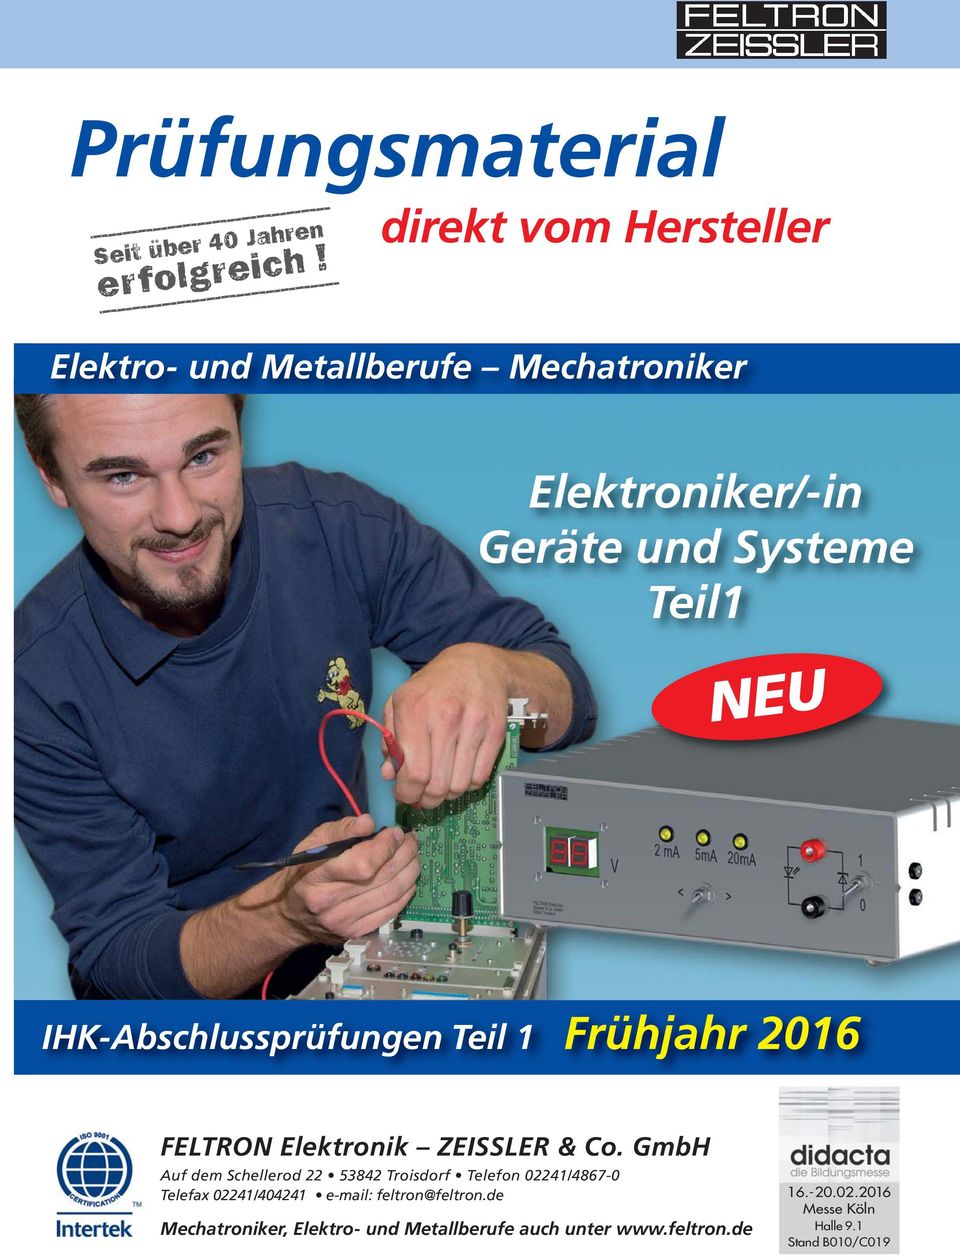 IHK-Abschlussprüfungen Teil 1 Frühjahr 2016 FELTRON Elektronik ZEISSLER & Co.